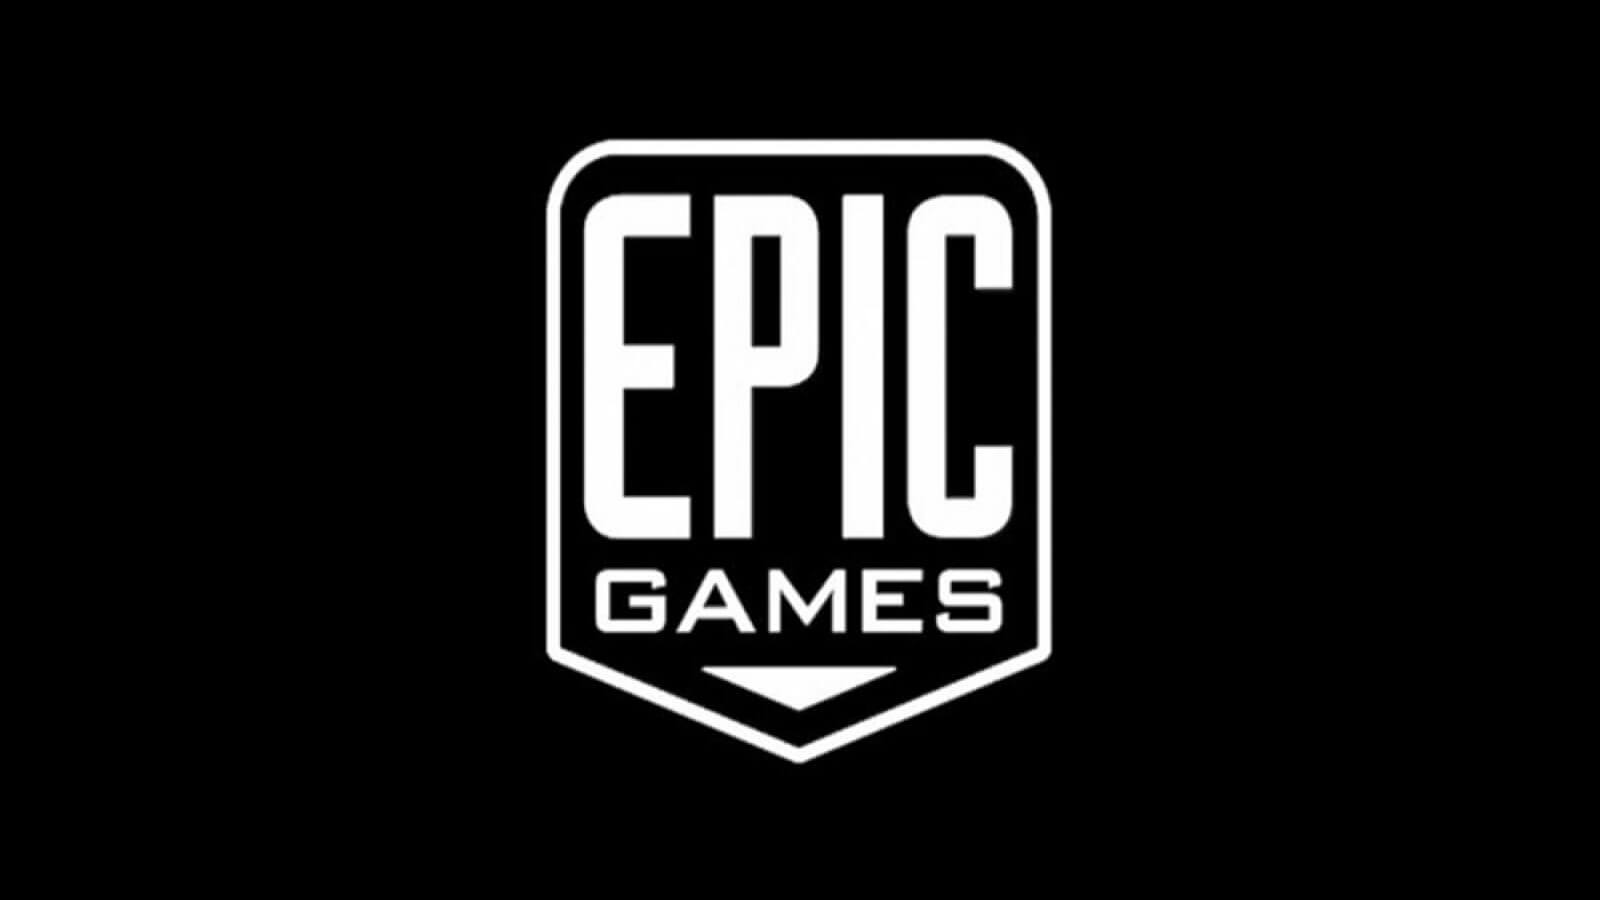 Epic Games Publishing